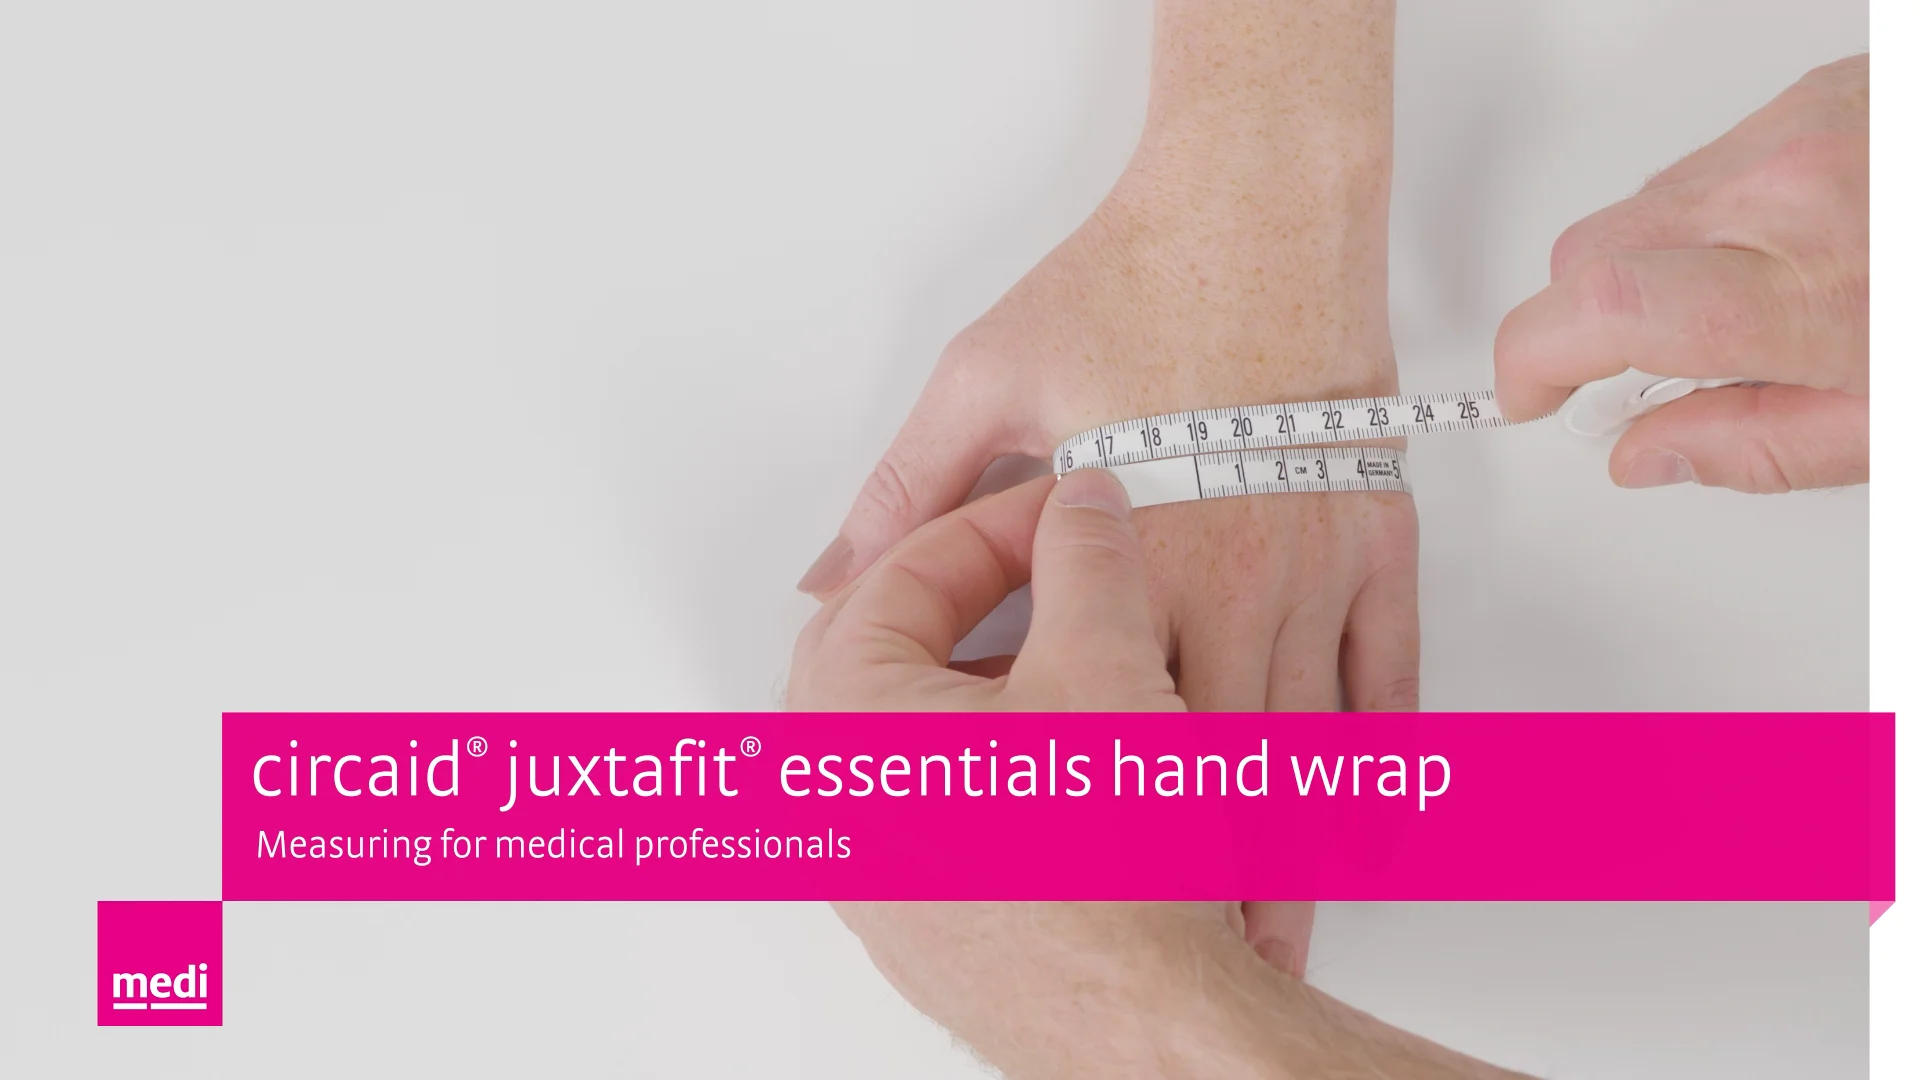 circaid® juxtafit® essentials hand wrap - Measuring for medical